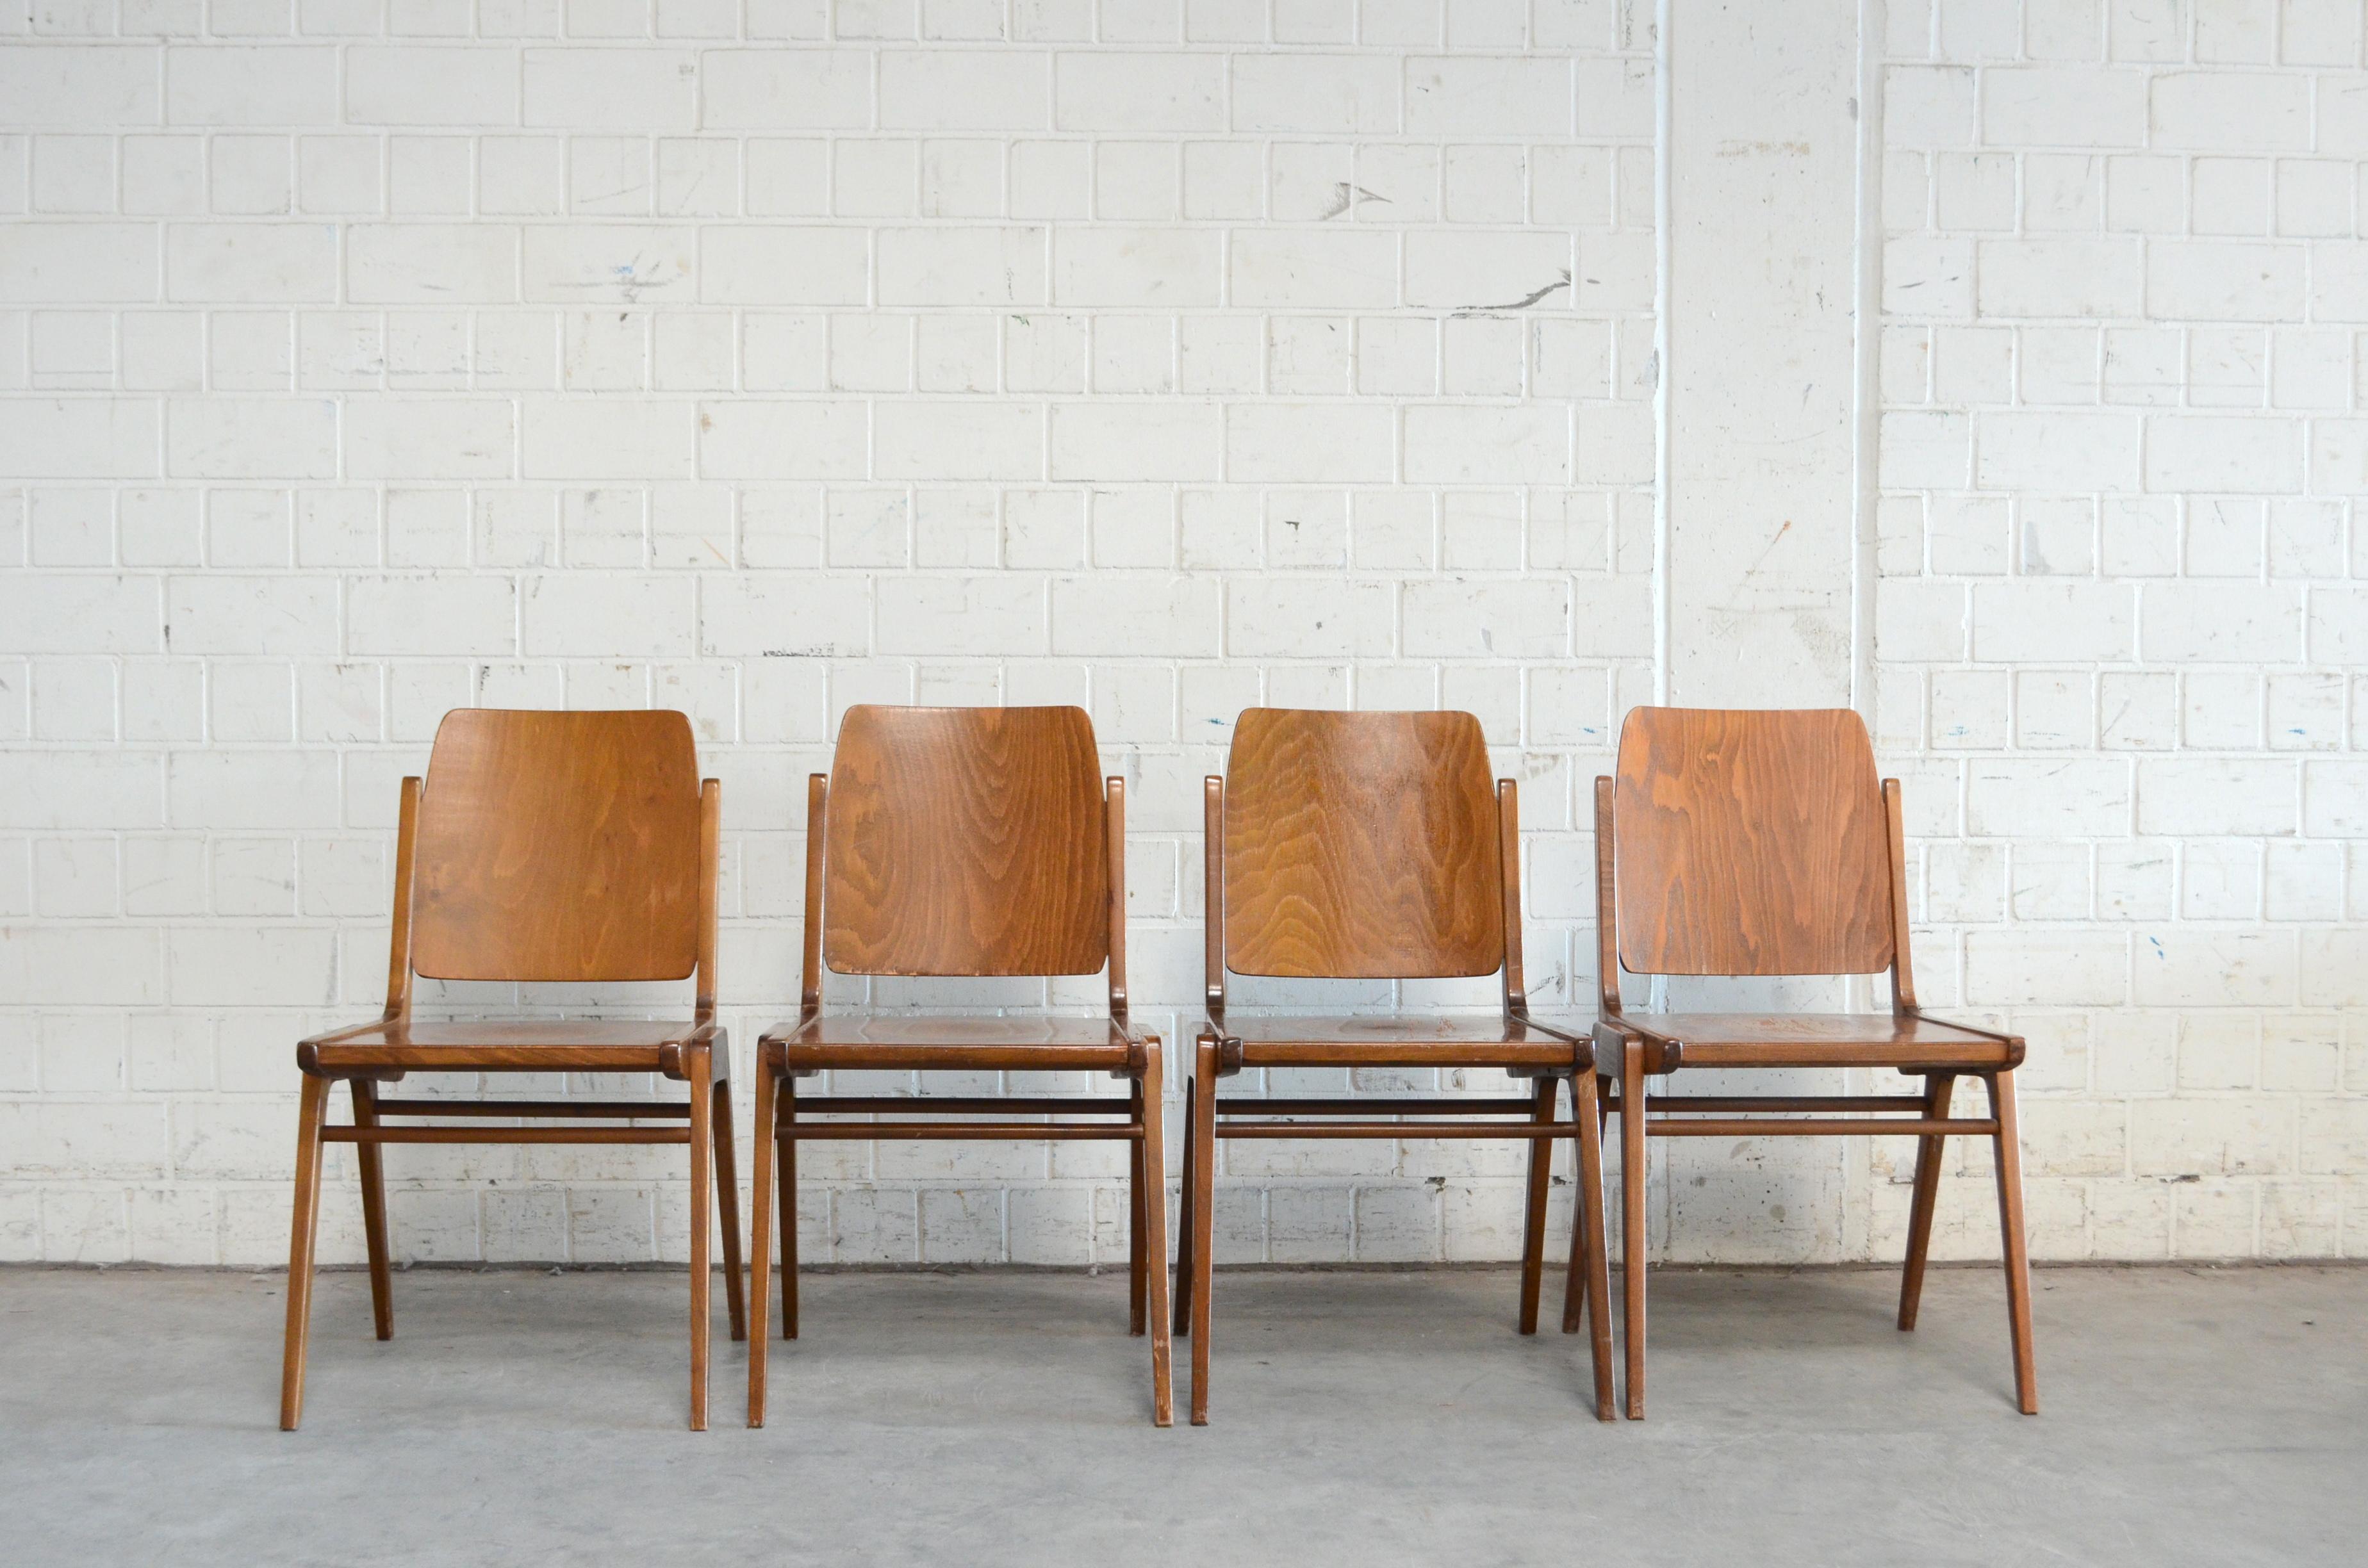 Diese Austro-Stühle wurden 1959 vom österreichischen Architekten Franz Schuster entworfen und von Wiesner Hager produziert.
Der Stuhl wird auch als 